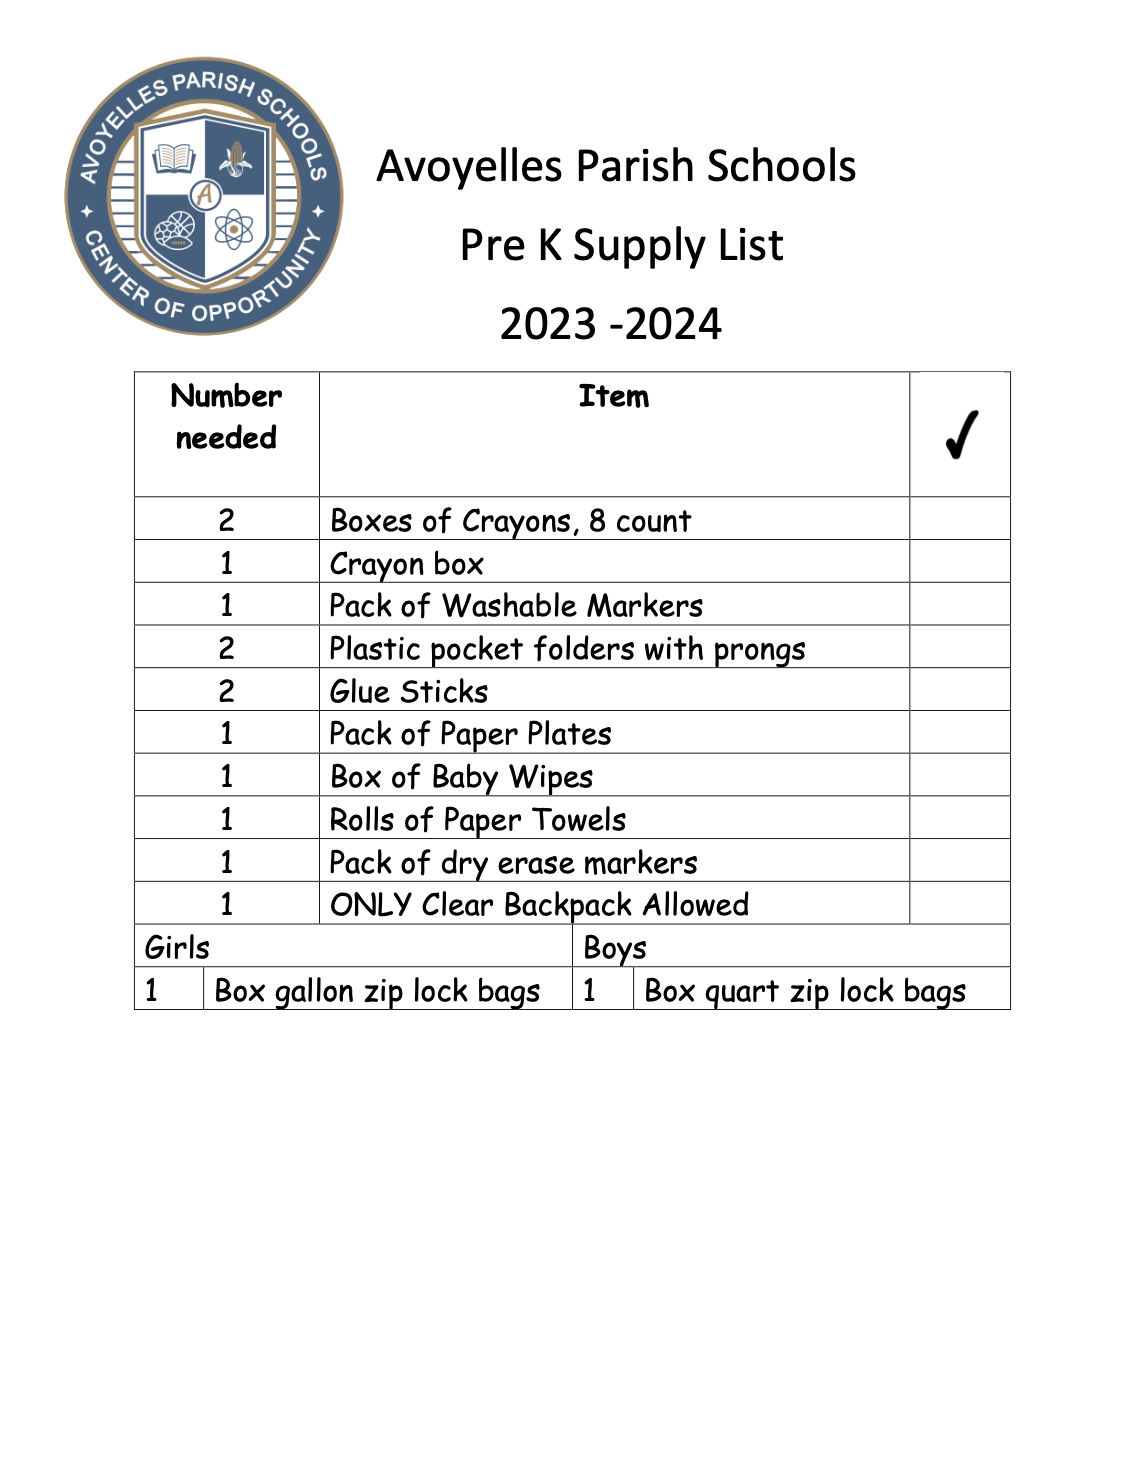 Pre-K Supply List 2023-2024